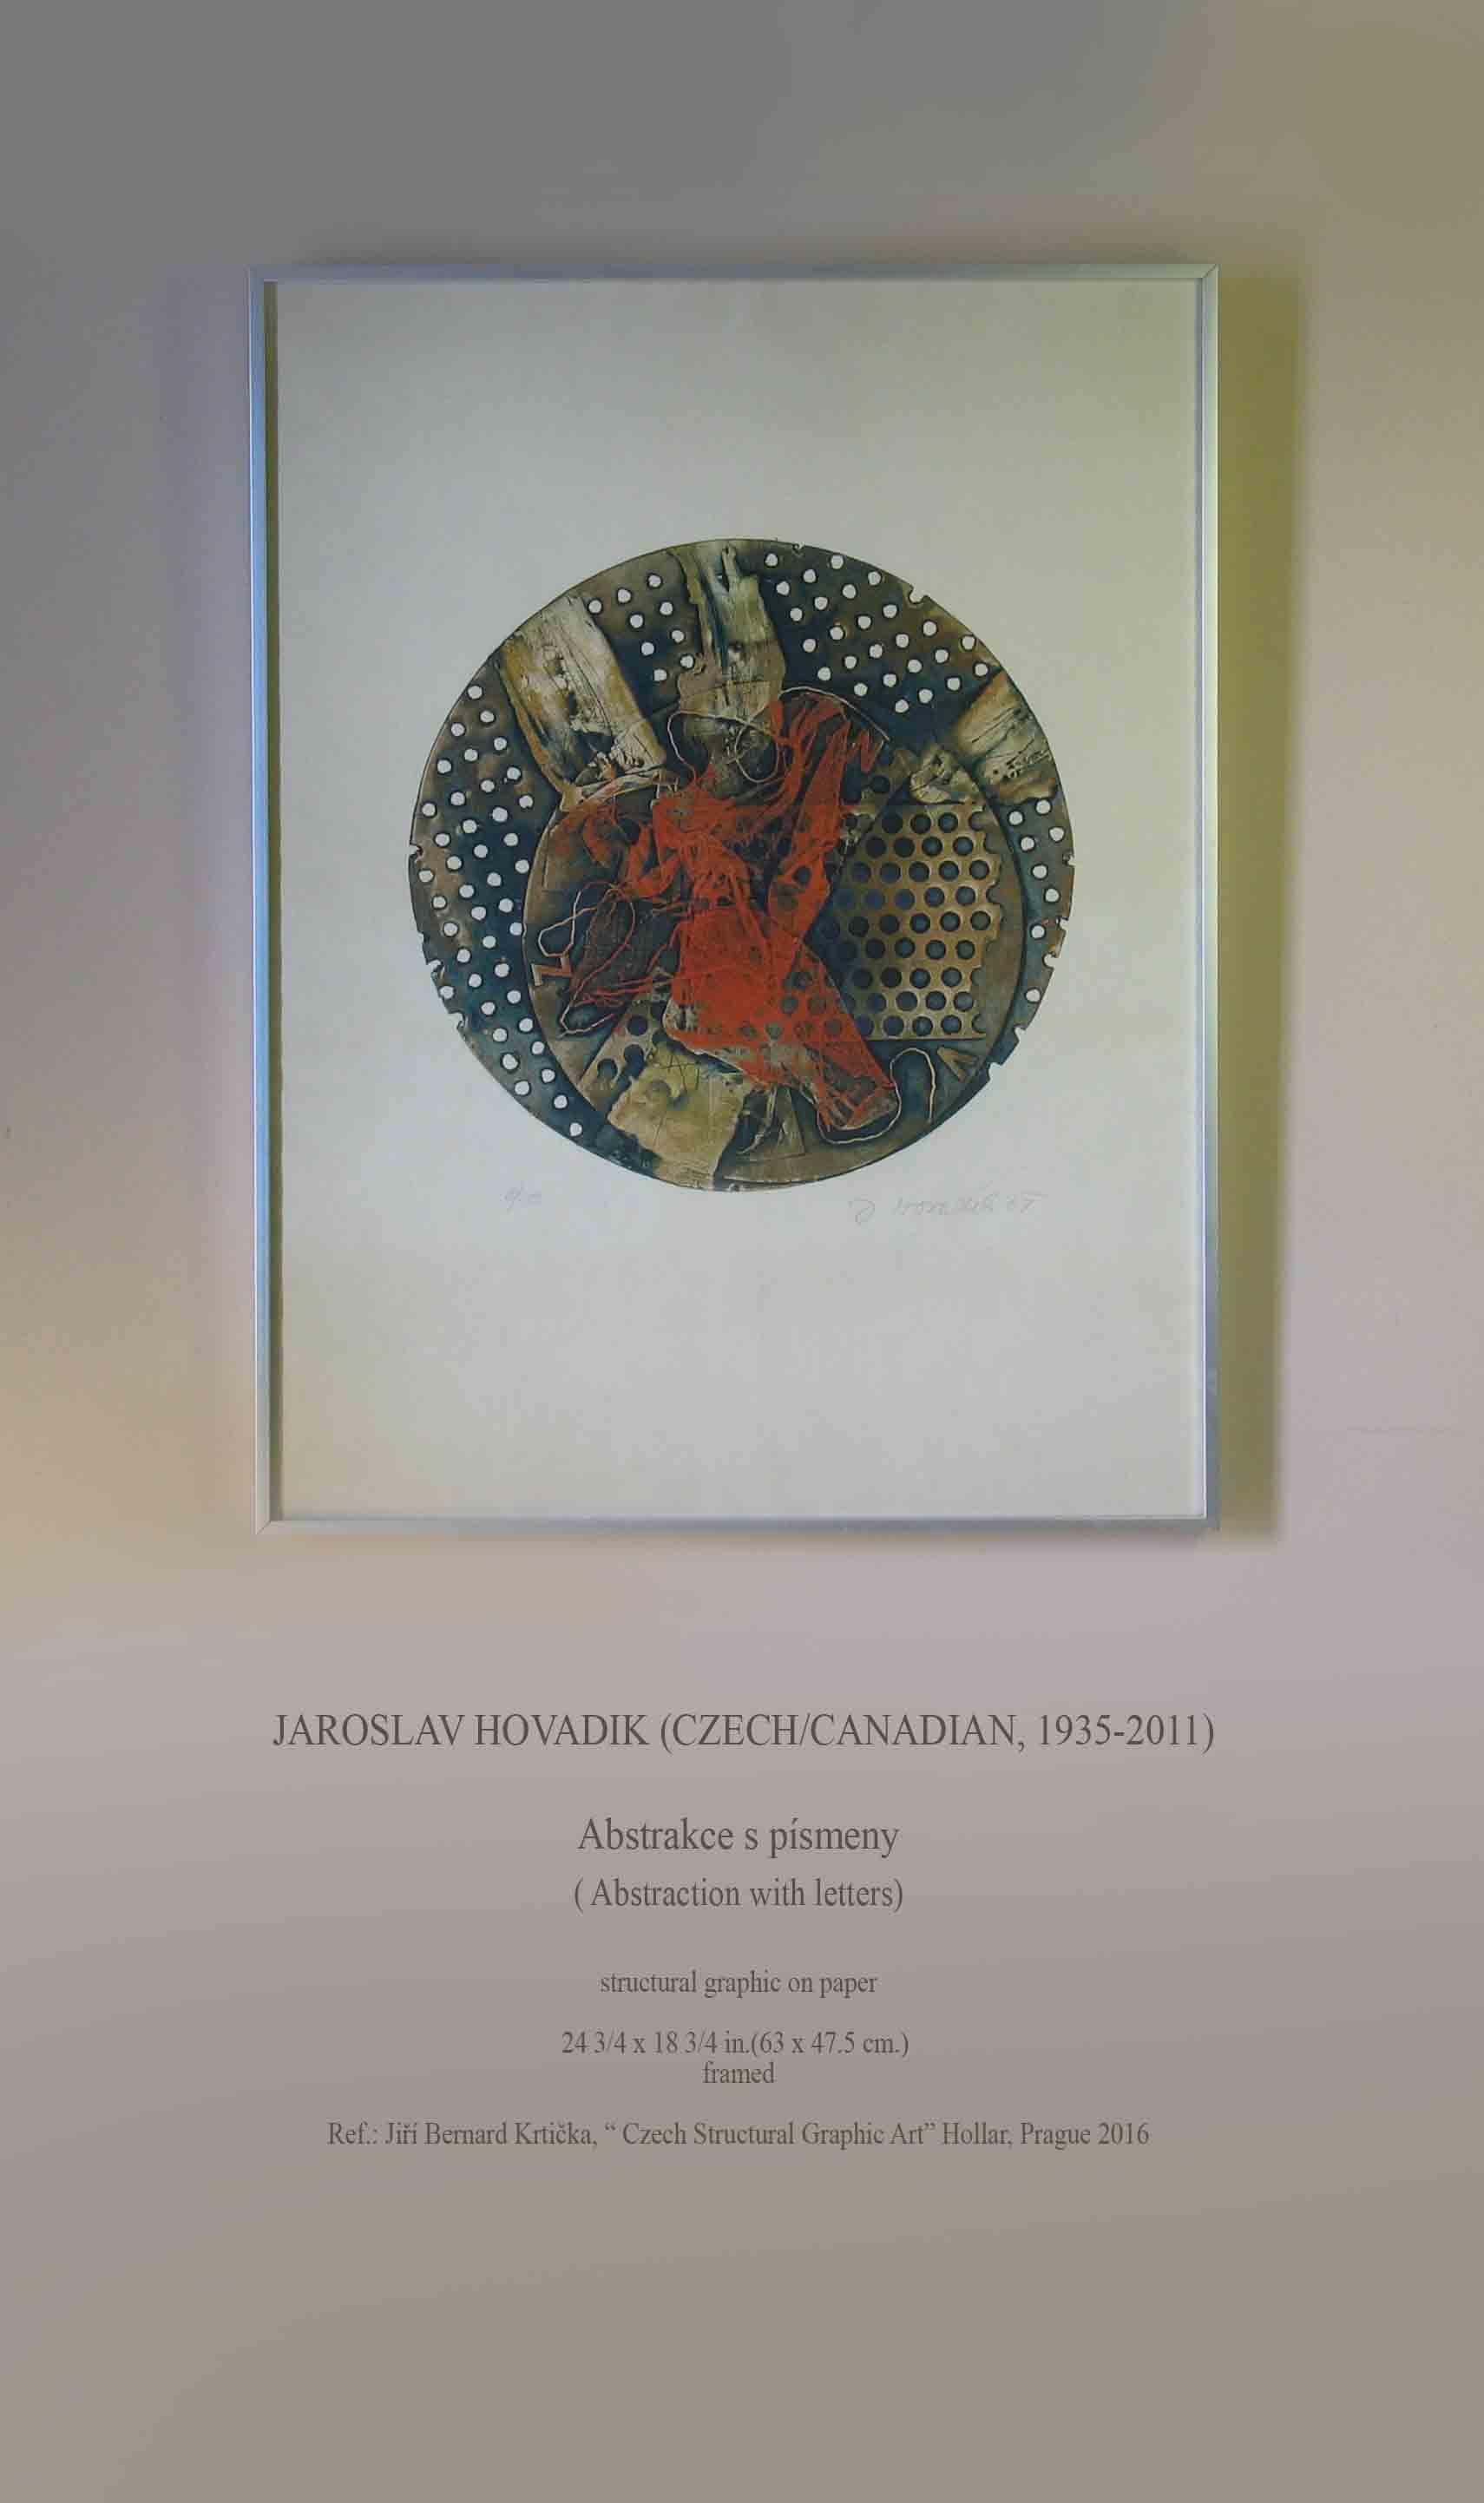 Jaroslav Hovadik (Tchèque/Canadien, 1935-2011)

Abstrakce s písmeny.

(Abstraction avec des lettres)


Graphique structurel sur papier.

Taille : 63 x 47,5 cm (24 3/4 x 18 3/4 in.) 
Encadré.

Réf. : Jirí Bernard Krticka, 